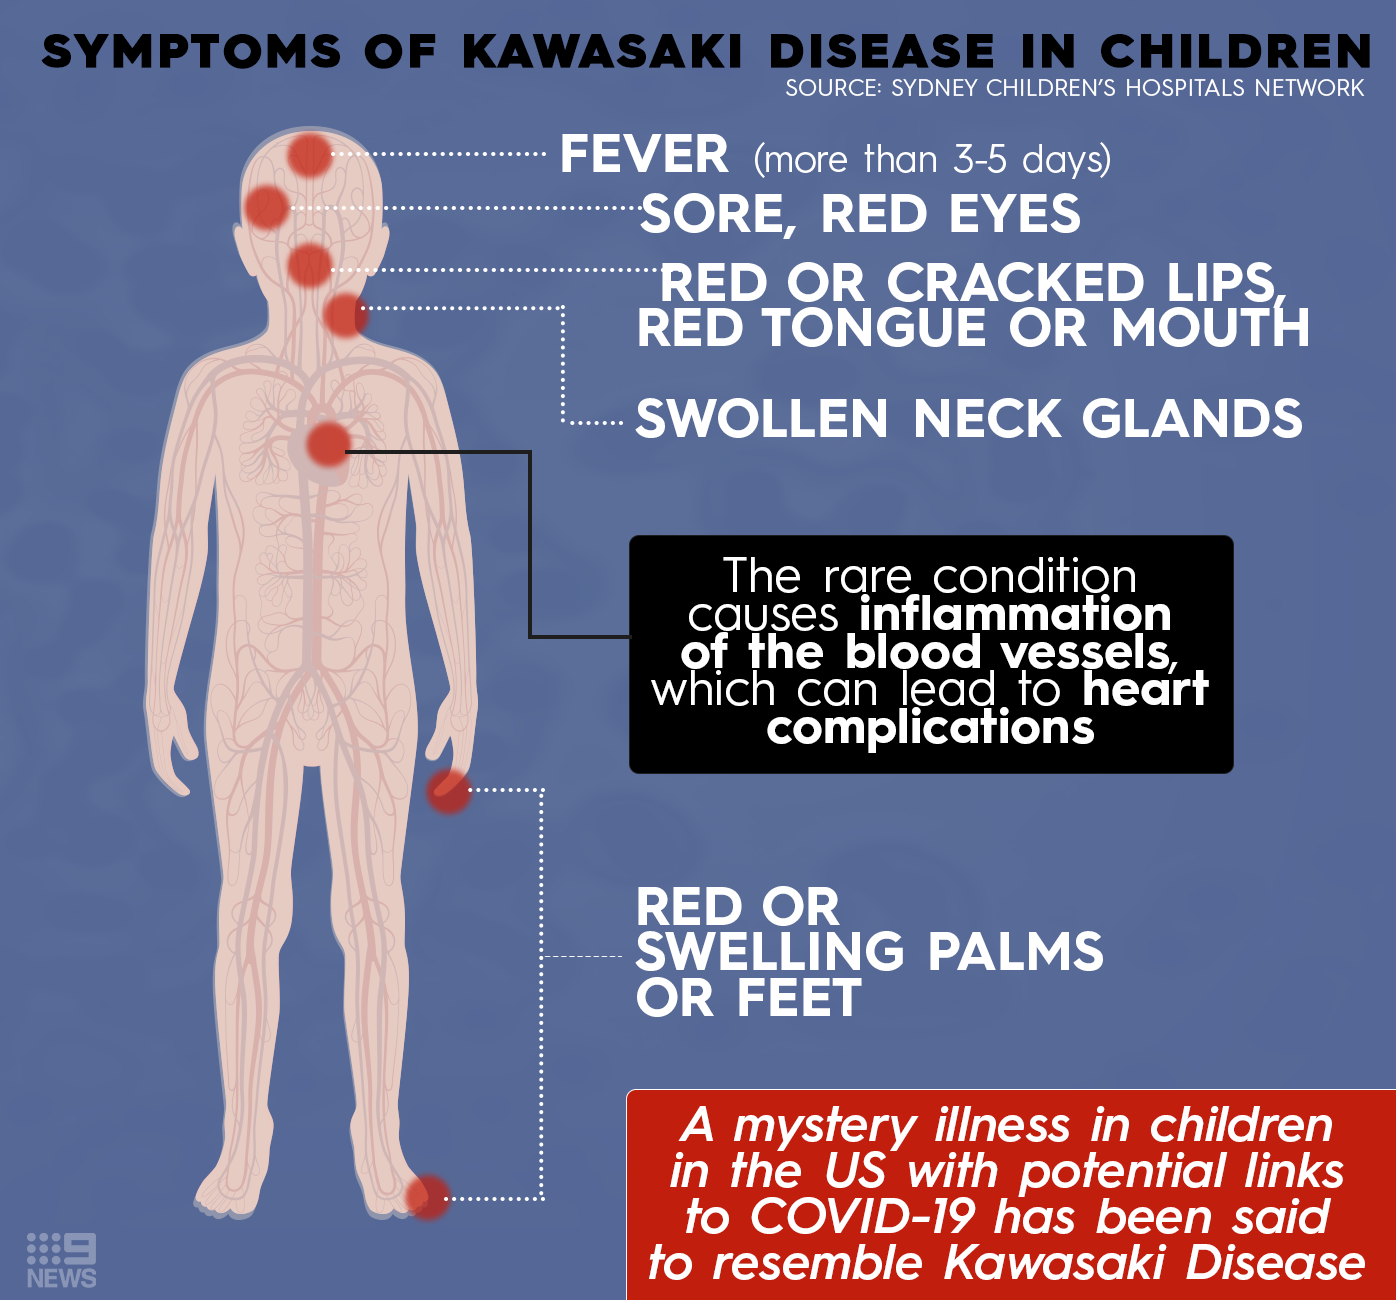 Symptoms of Kawasaki Disease in children.